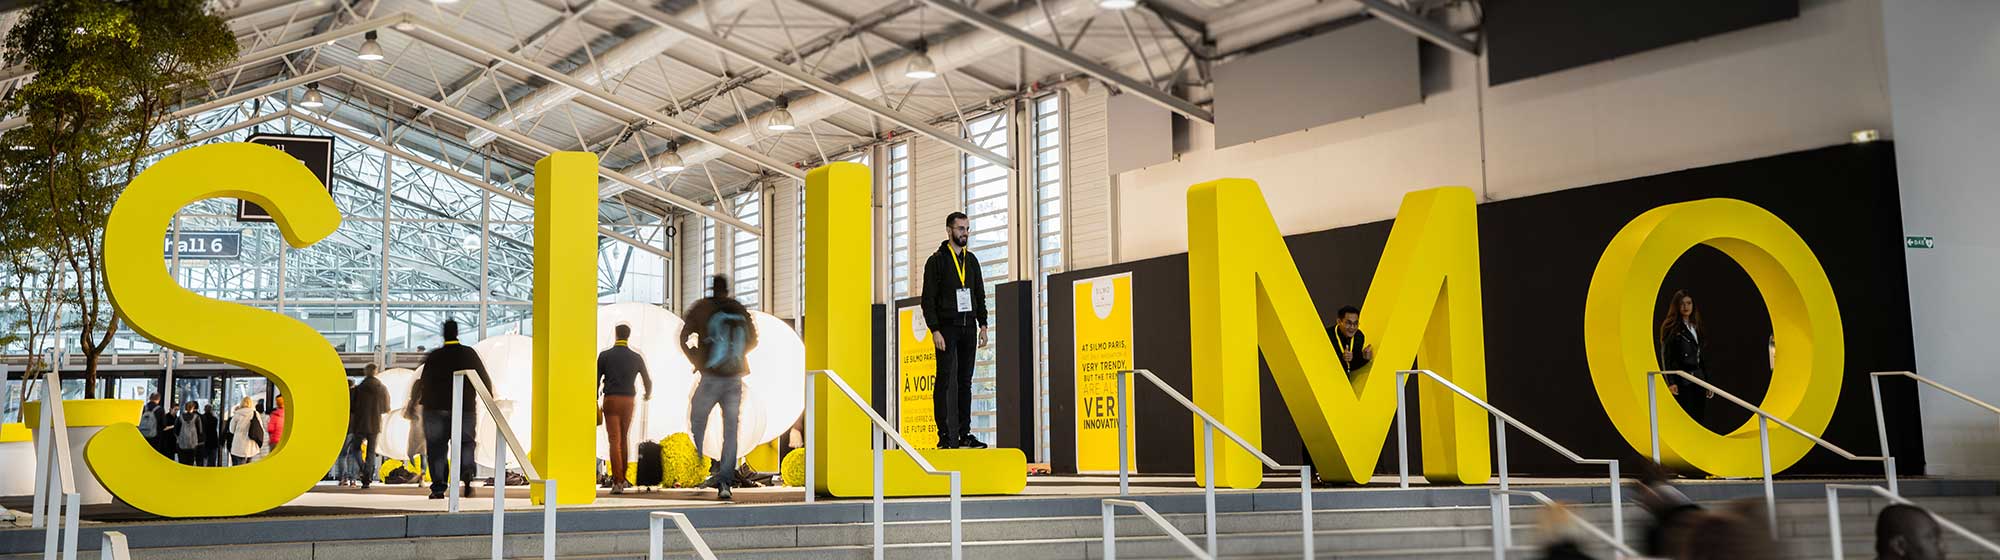 Lettres SILMO en haut d'un escalier en jaune et noir